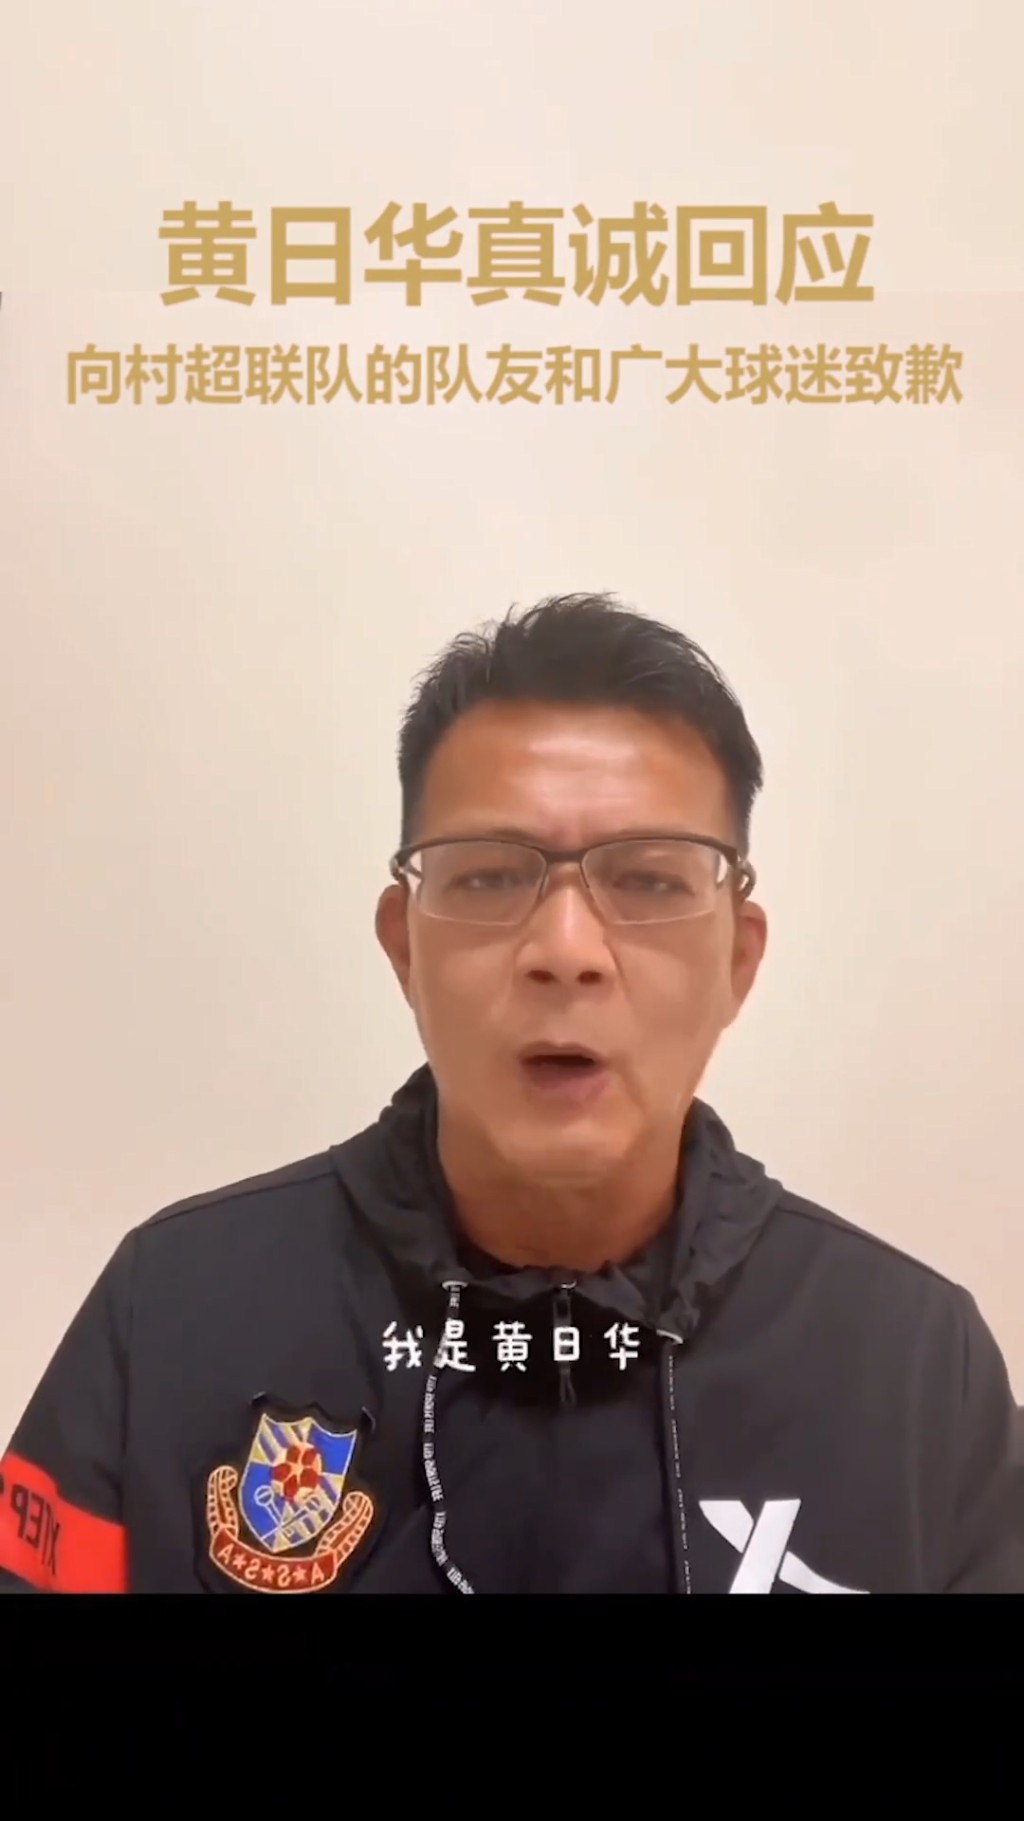 相隔三日黃日華在「明星足球隊」的官方抖音賬號拍片道歉。